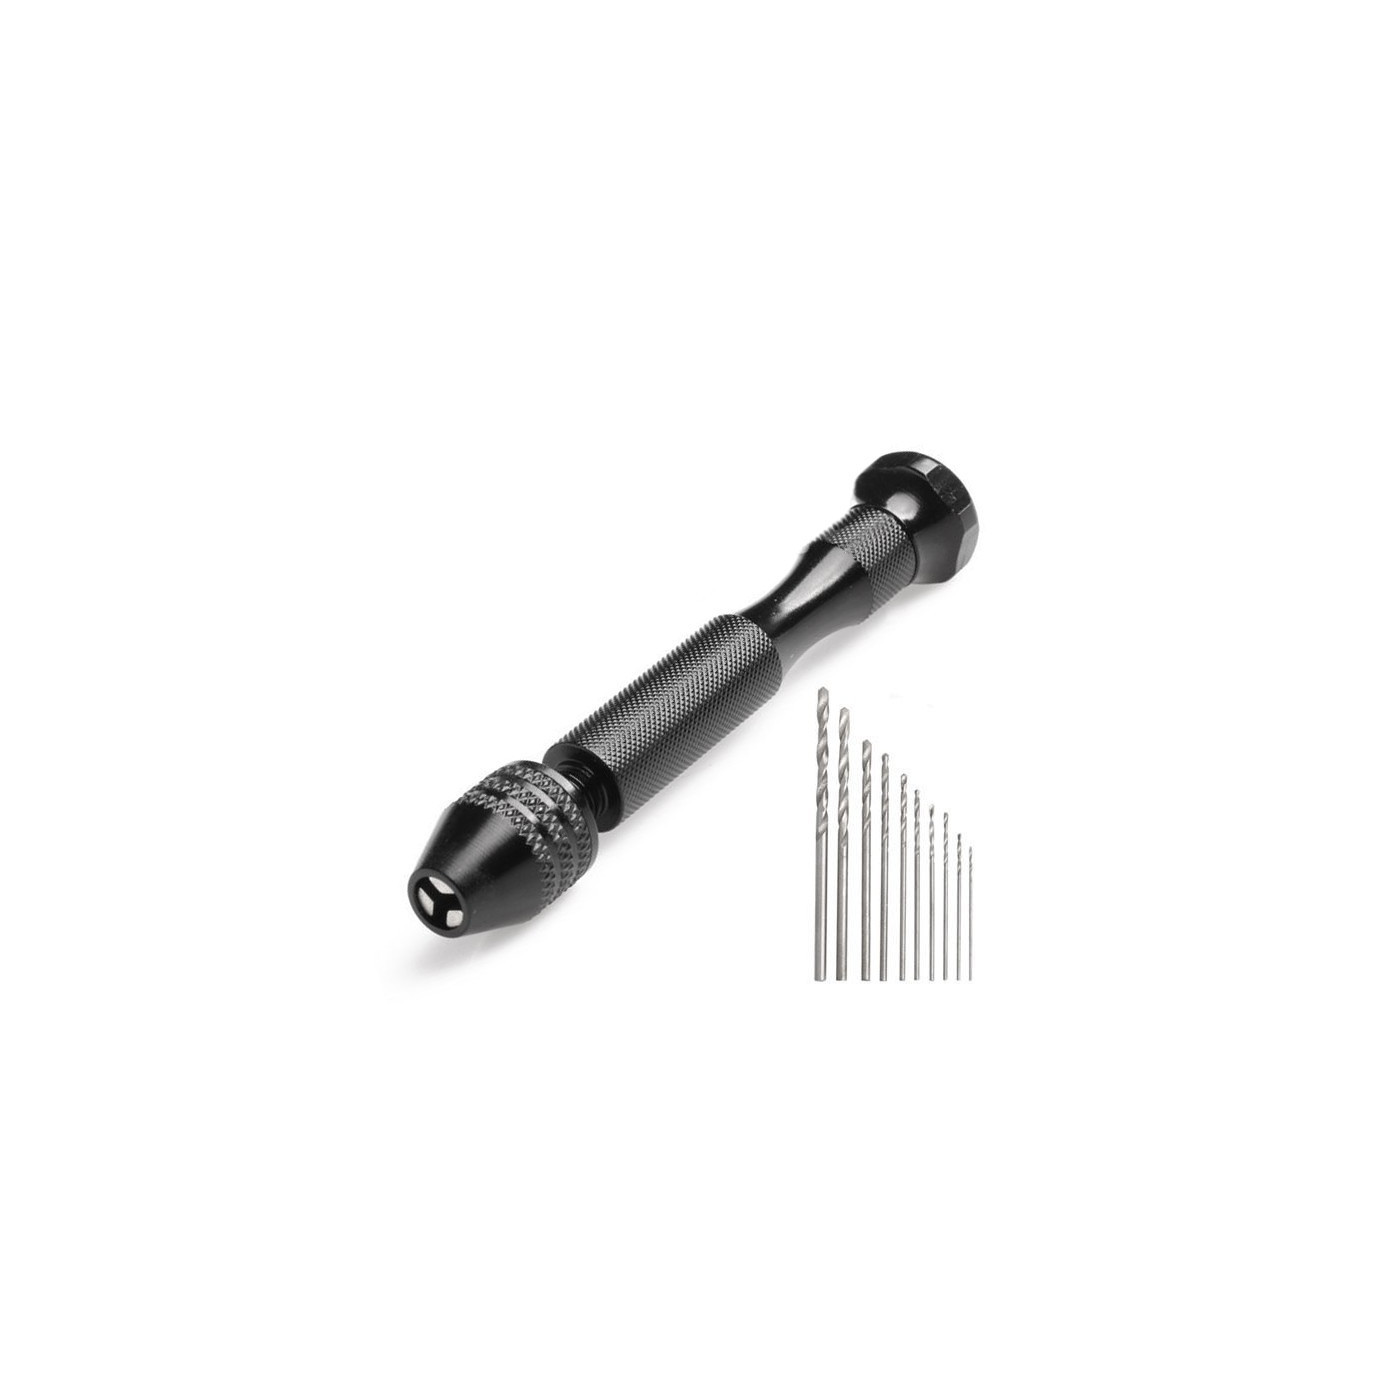 Micro hand drill black (10 drill bits included)